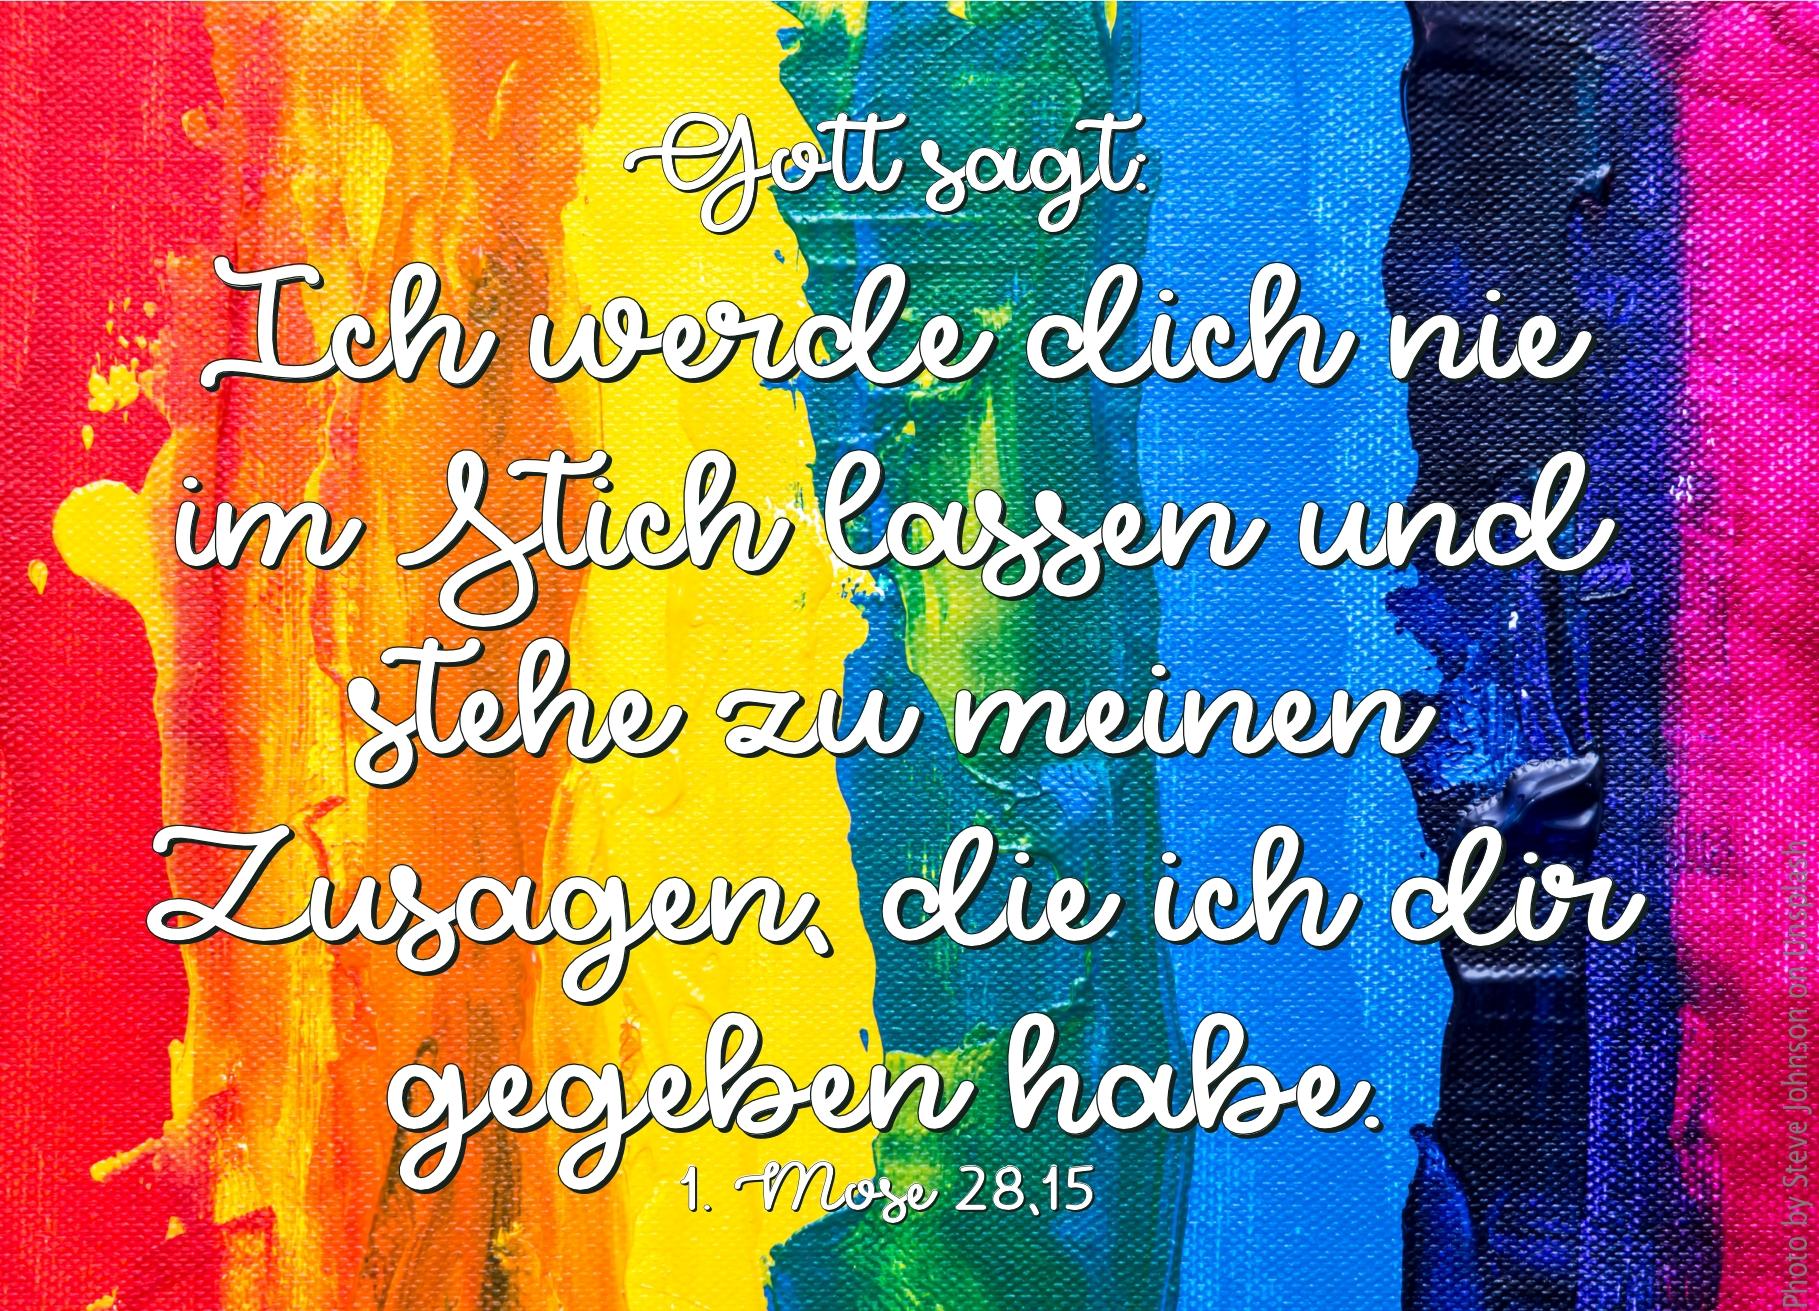 alt="regenbogenfarben_auf_stoff_erwartet_bibelhoerbuch_jesus_predigt"